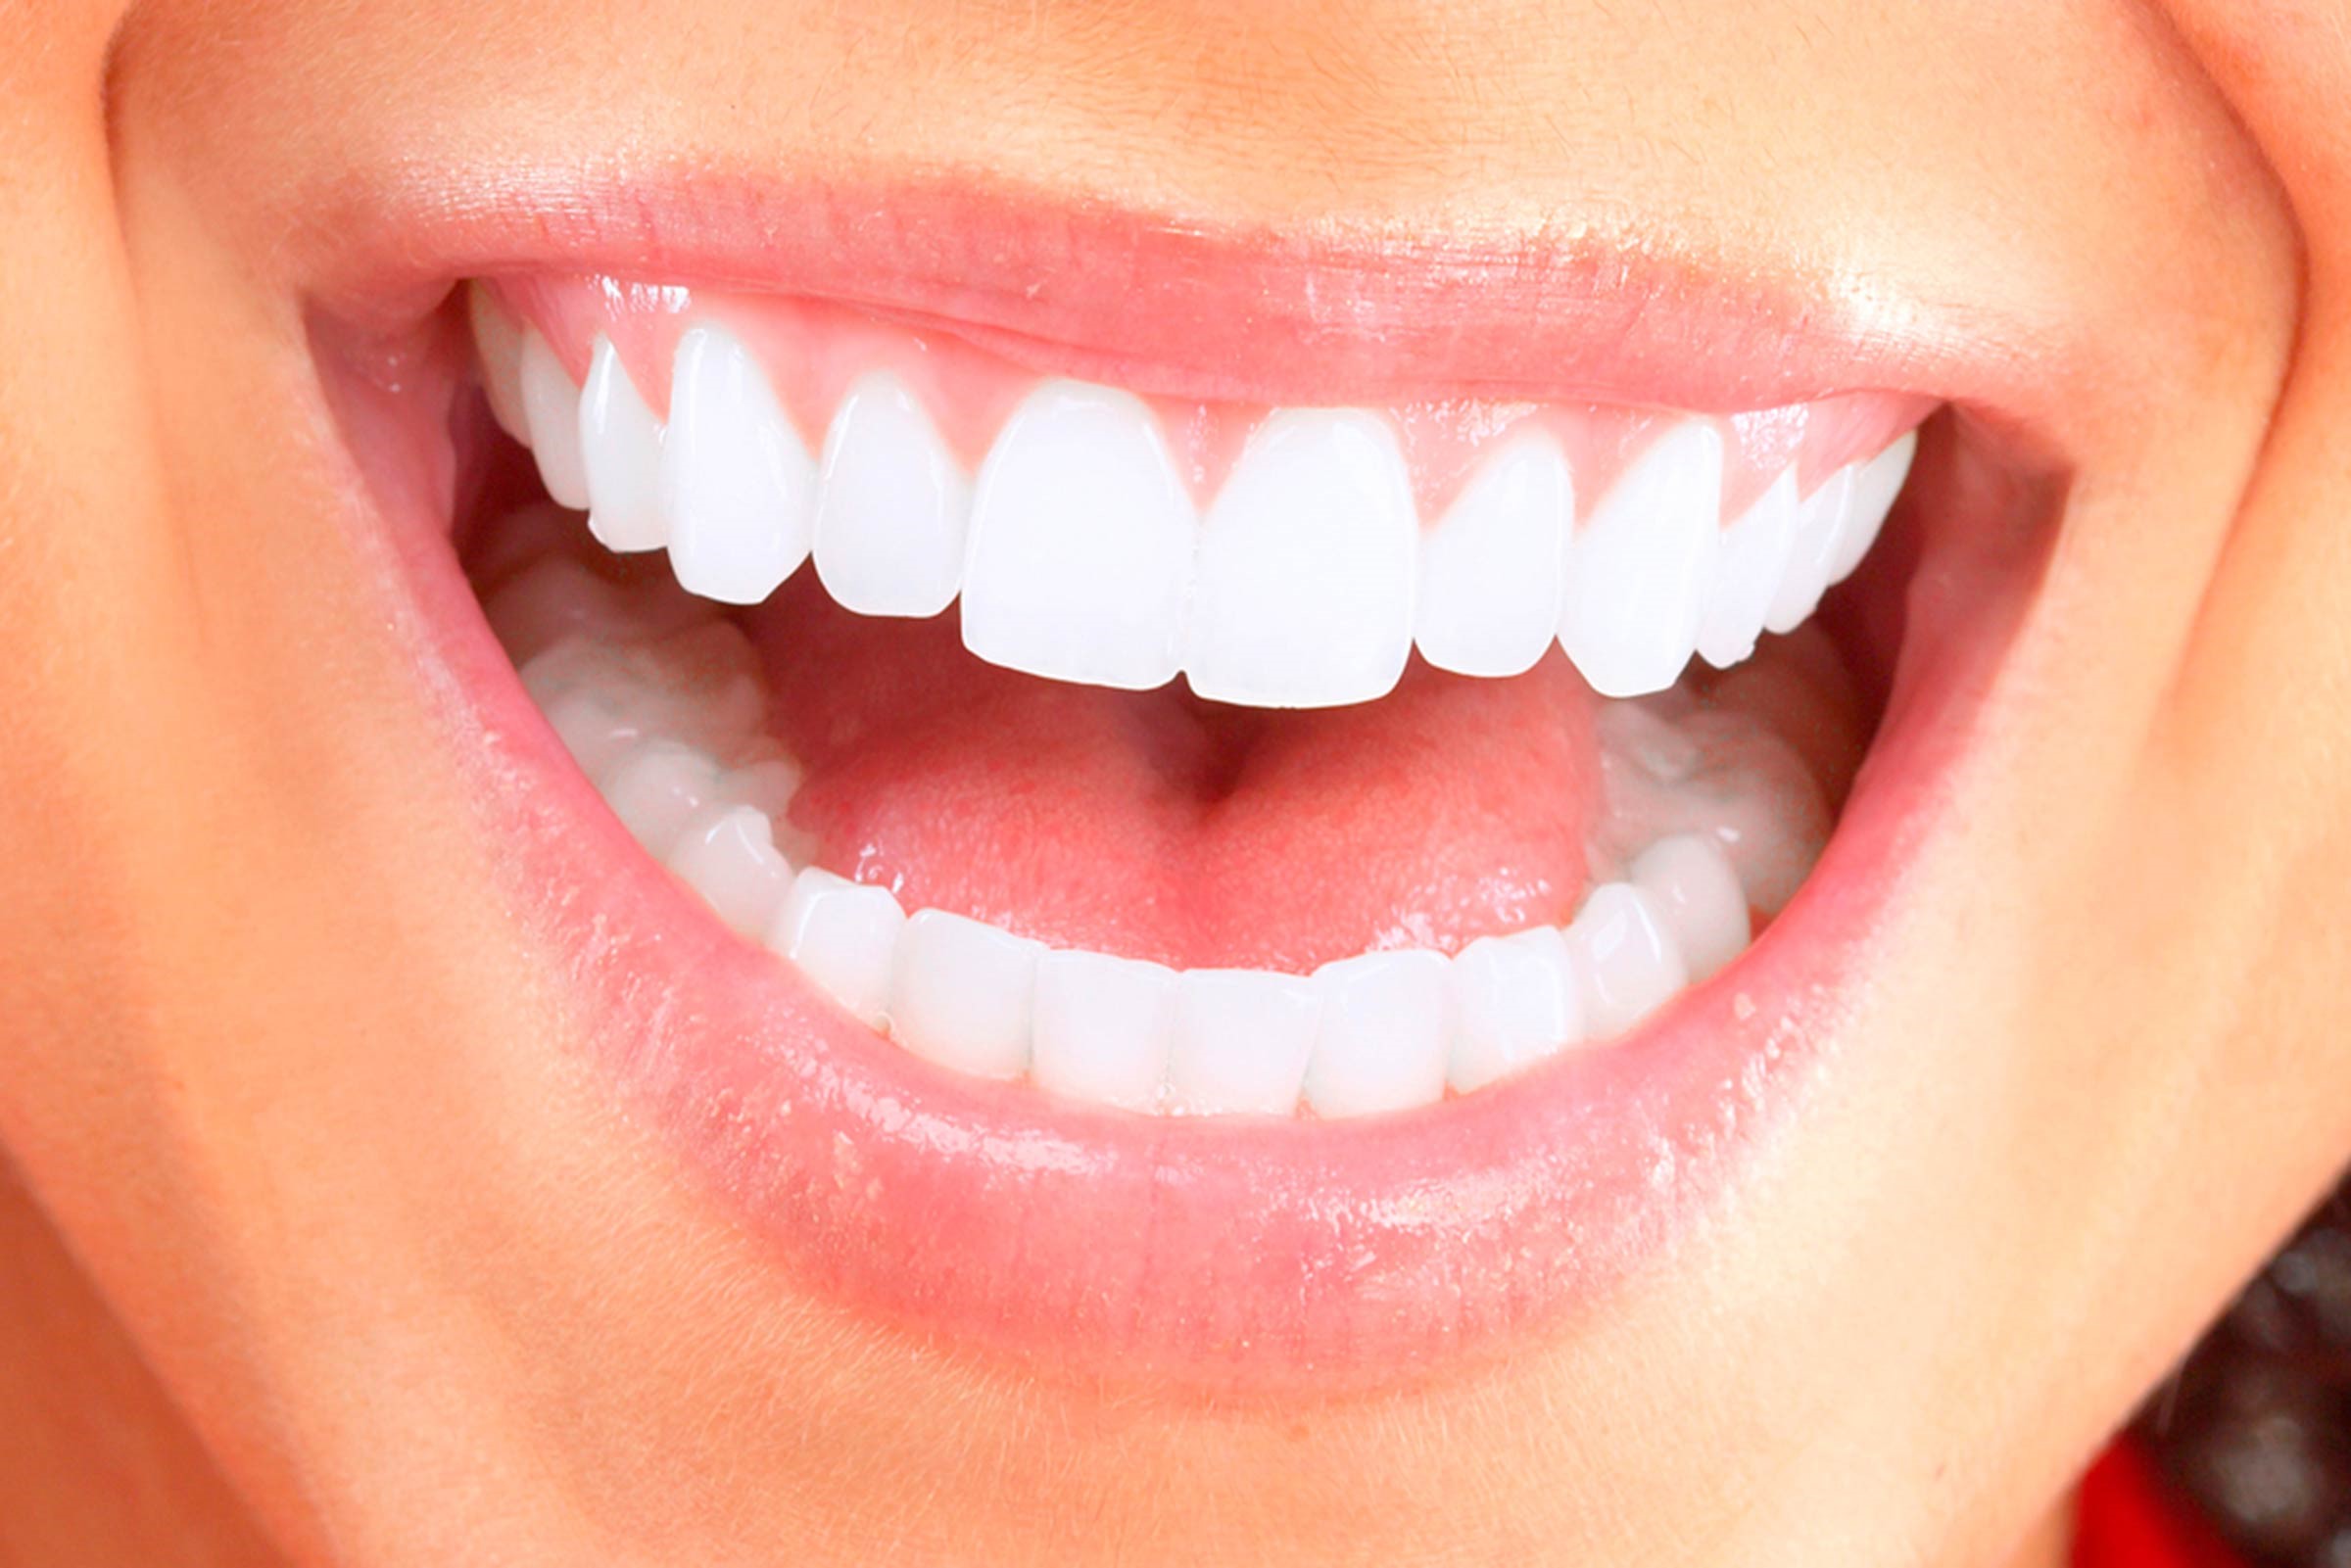 Всеки зъб е свързан с орган в тялото - болката във всеки зъб може да предскаже проблеми в определени органи!